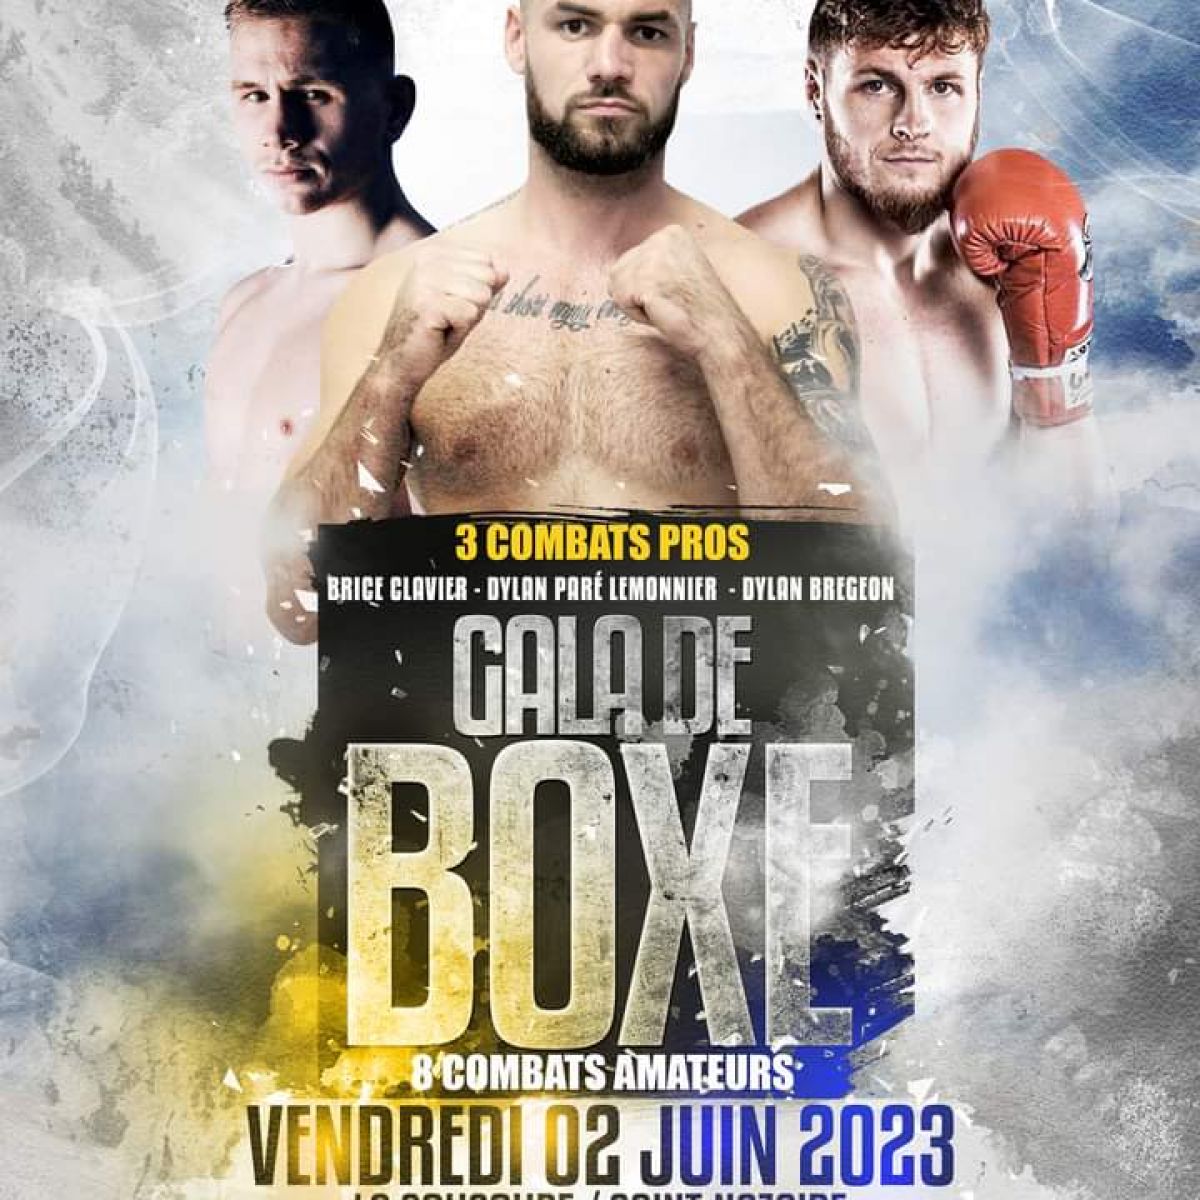 Gala de boxe du 2 juin, La Soucoupe, Boxing Nazairien